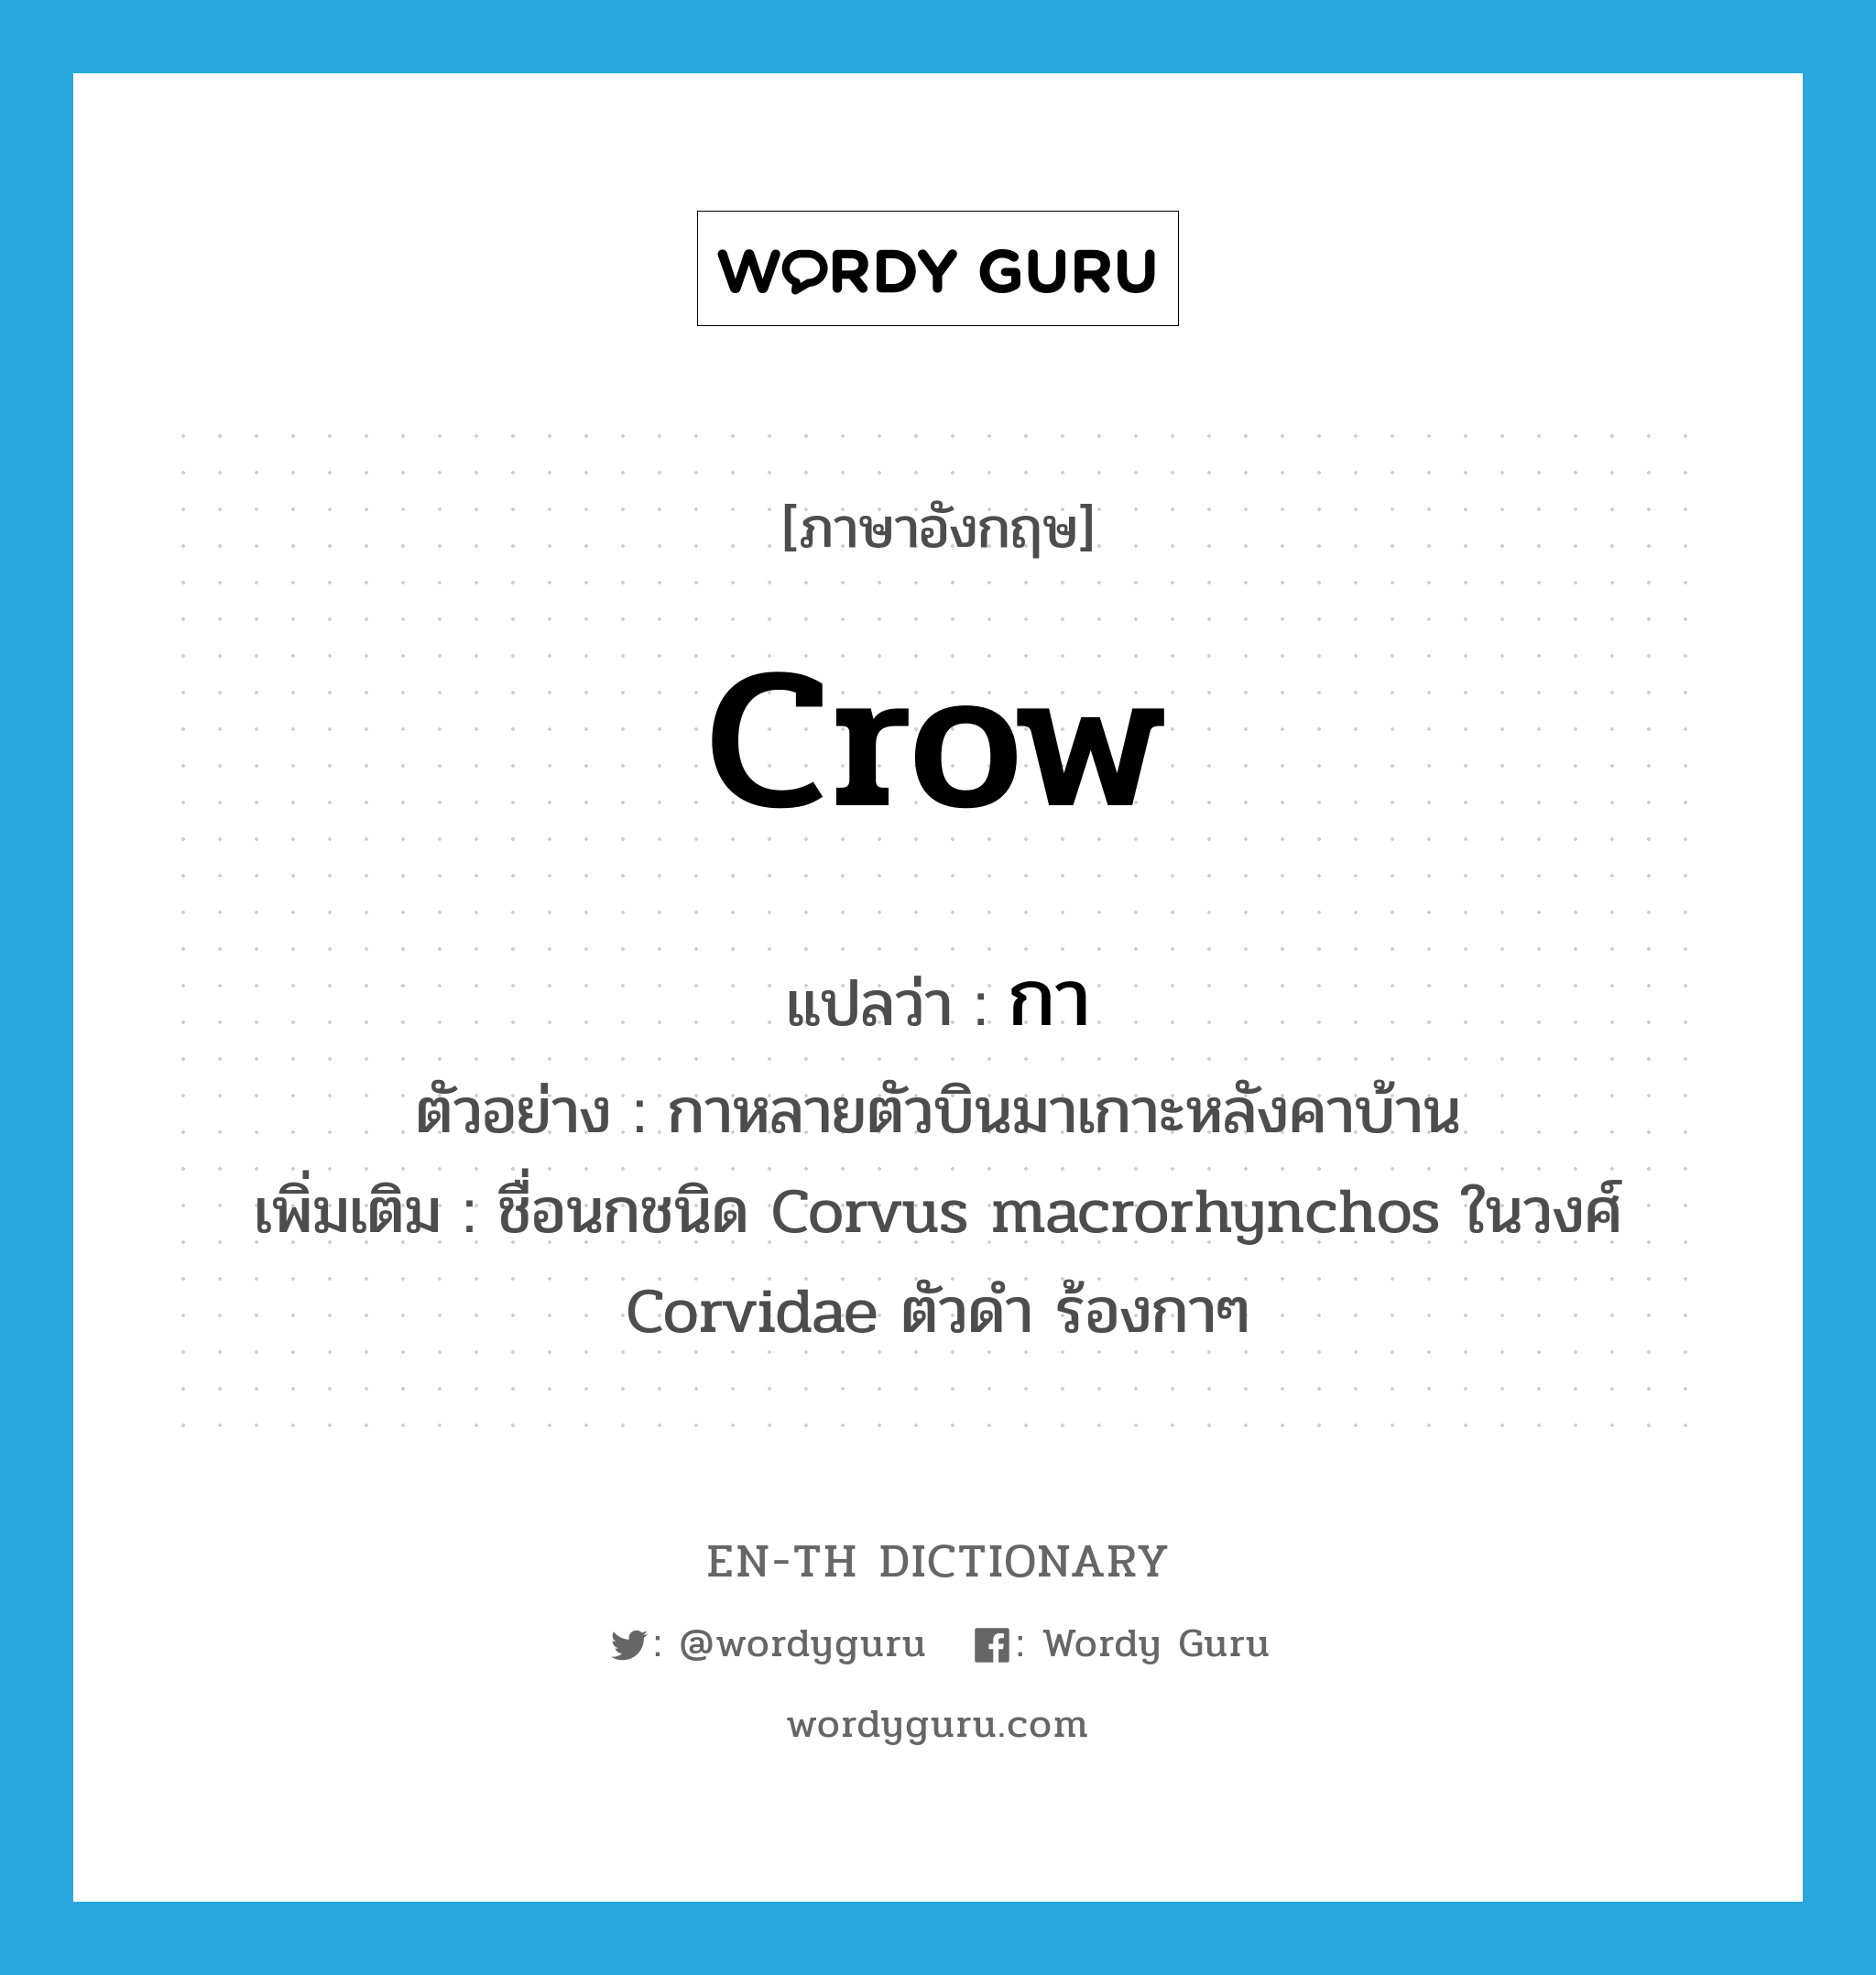 กา ภาษาอังกฤษ?, คำศัพท์ภาษาอังกฤษ กา แปลว่า crow ประเภท N ตัวอย่าง กาหลายตัวบินมาเกาะหลังคาบ้าน เพิ่มเติม ชื่อนกชนิด Corvus macrorhynchos ในวงศ์ Corvidae ตัวดำ ร้องกาๆ หมวด N